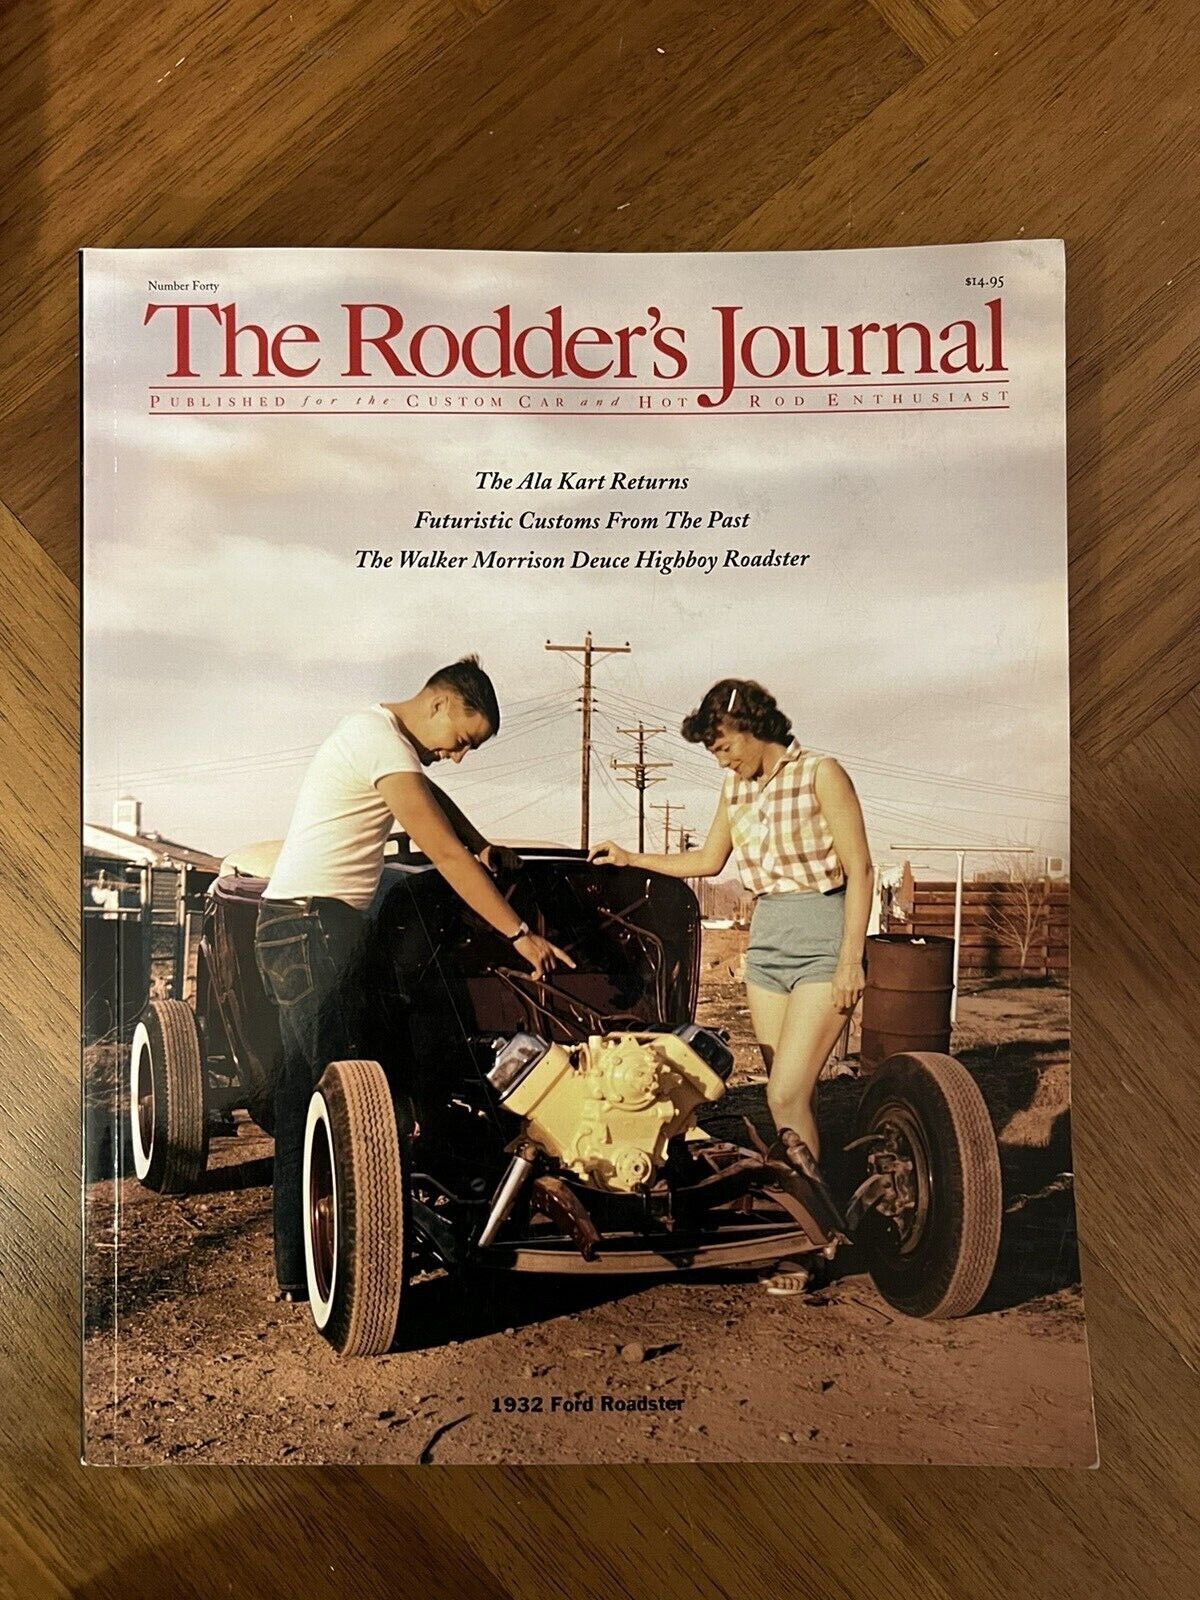 Rodder's Journal Magazine #40 1932 Ford Roadster 2008 The Ala Kart Hot Rods